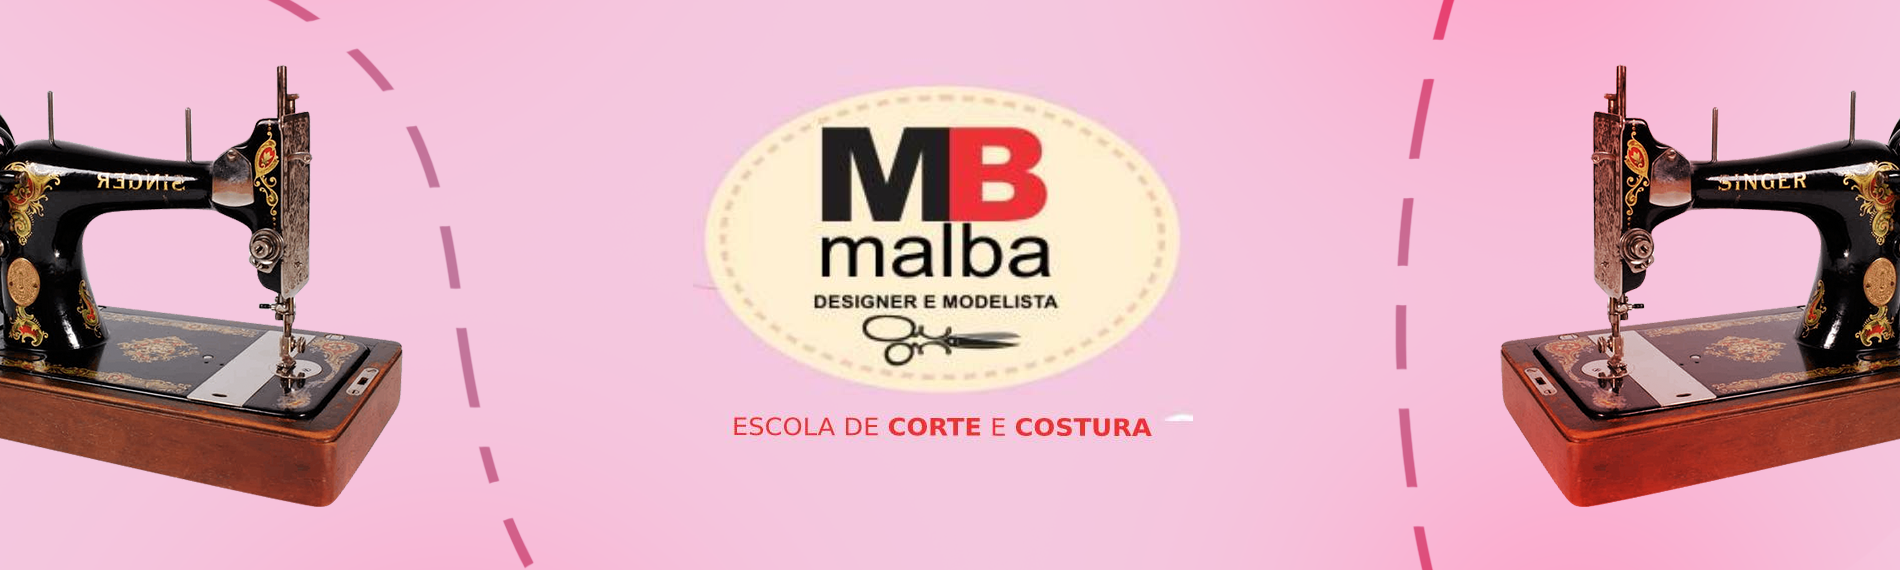 banner da empresa Malba Ateliêr Escola de Corte e Costura